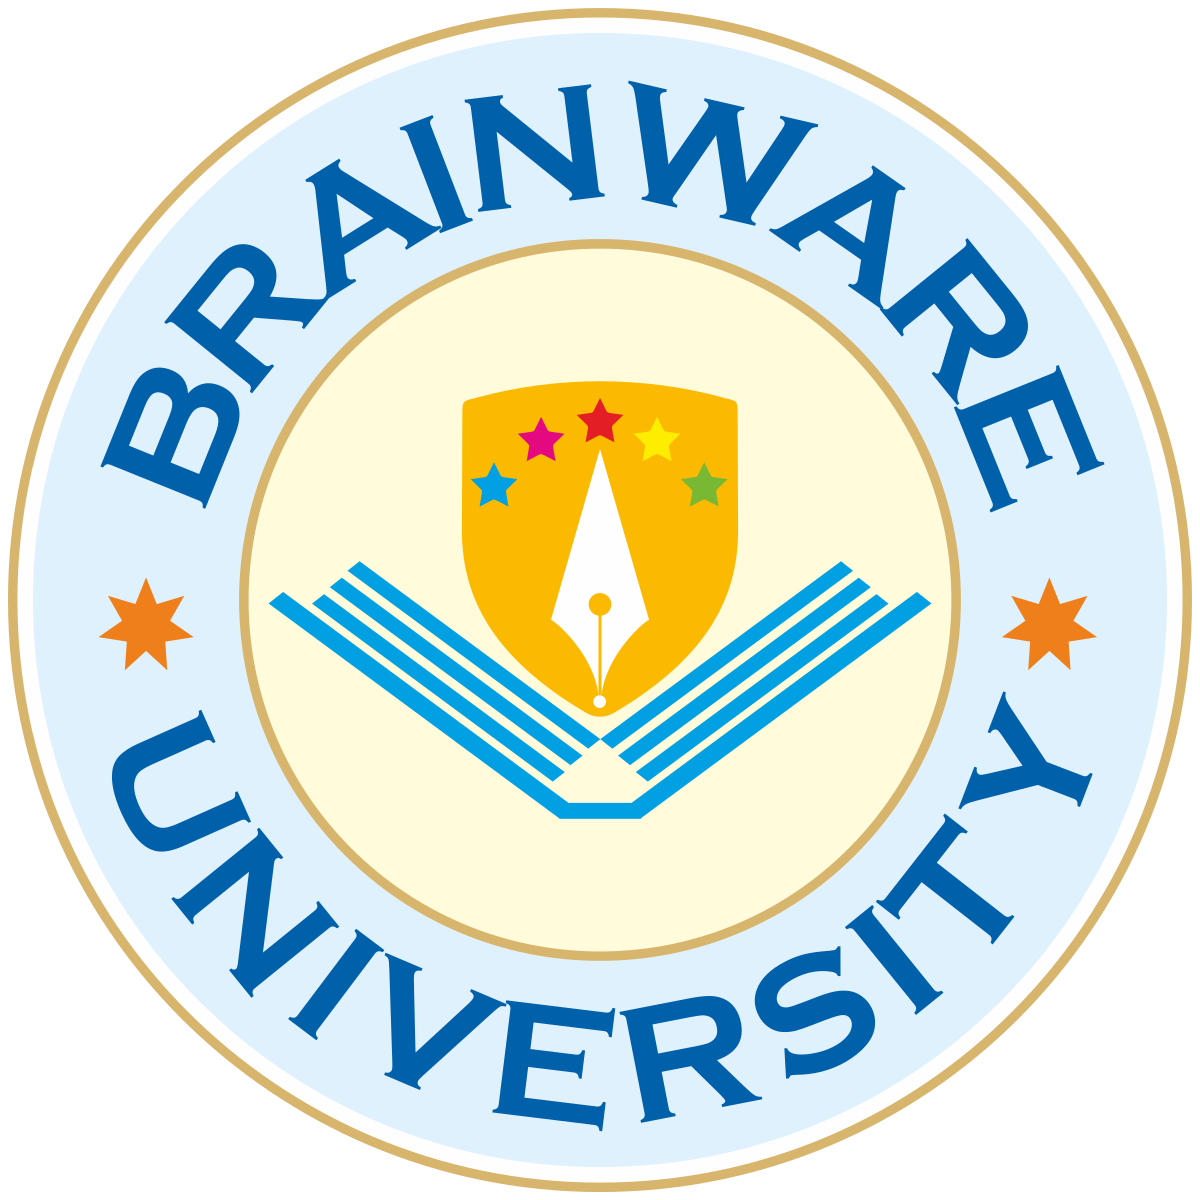 Brainware University - Wikipedia